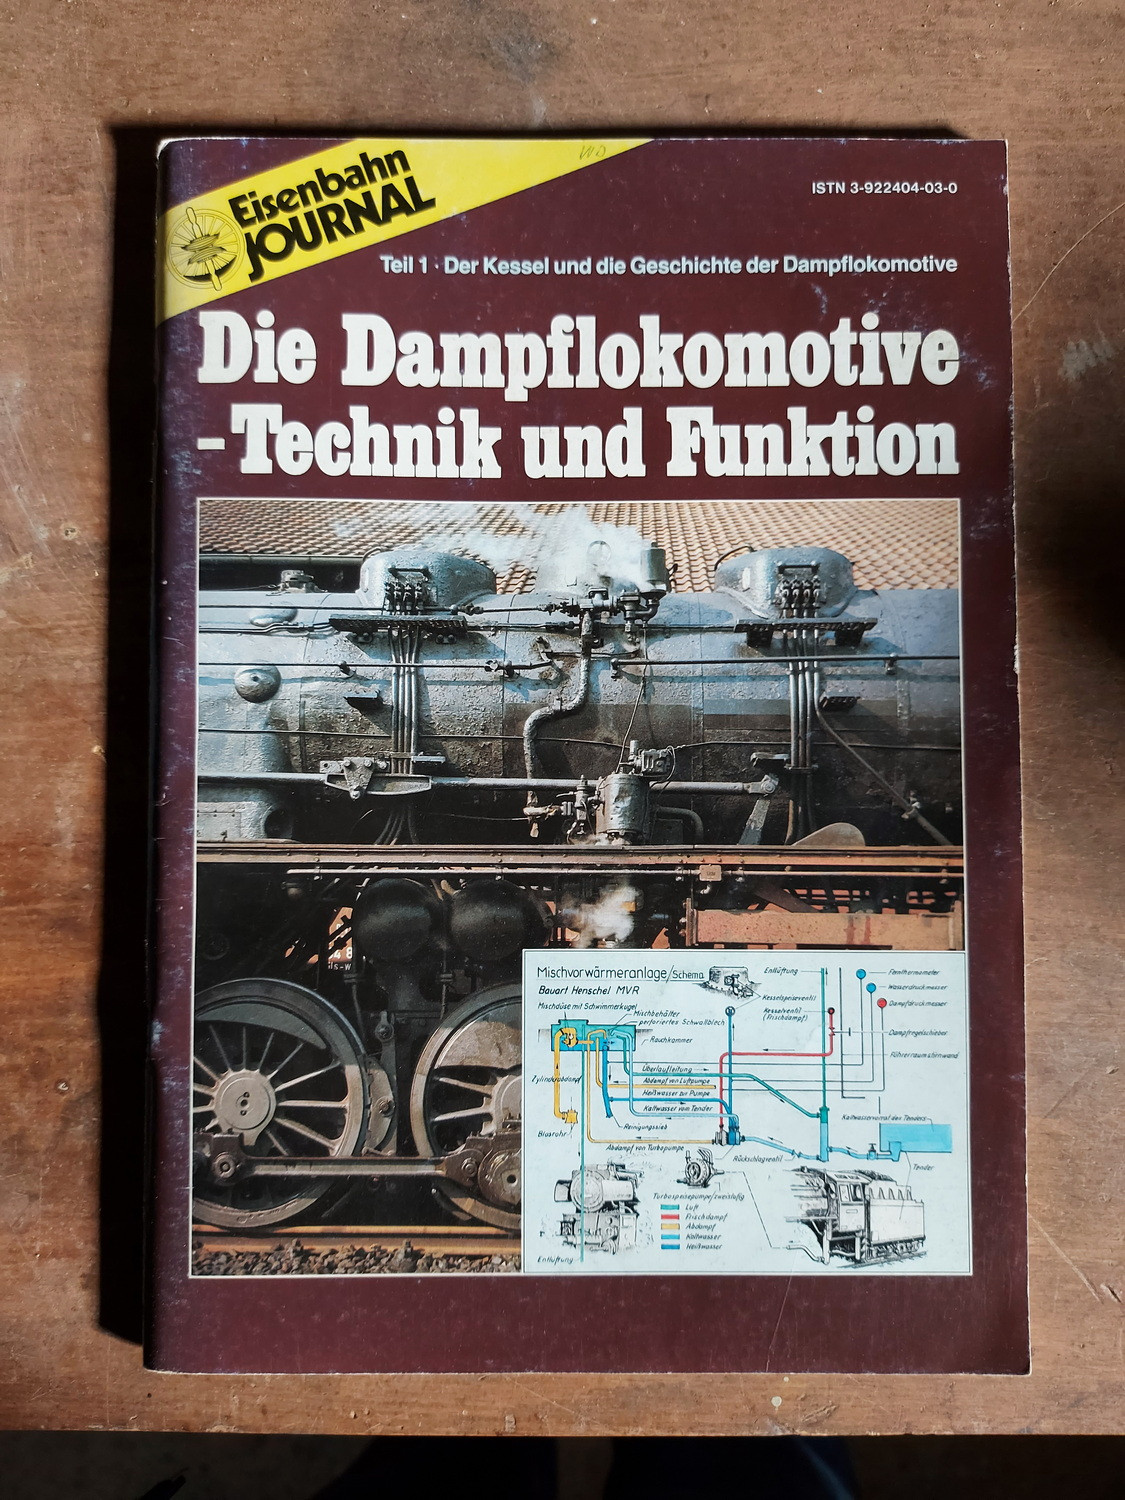 Die Dampflokomotive - Technik und Funktion, Teil 1 bis 4, Eisenbahn Journal